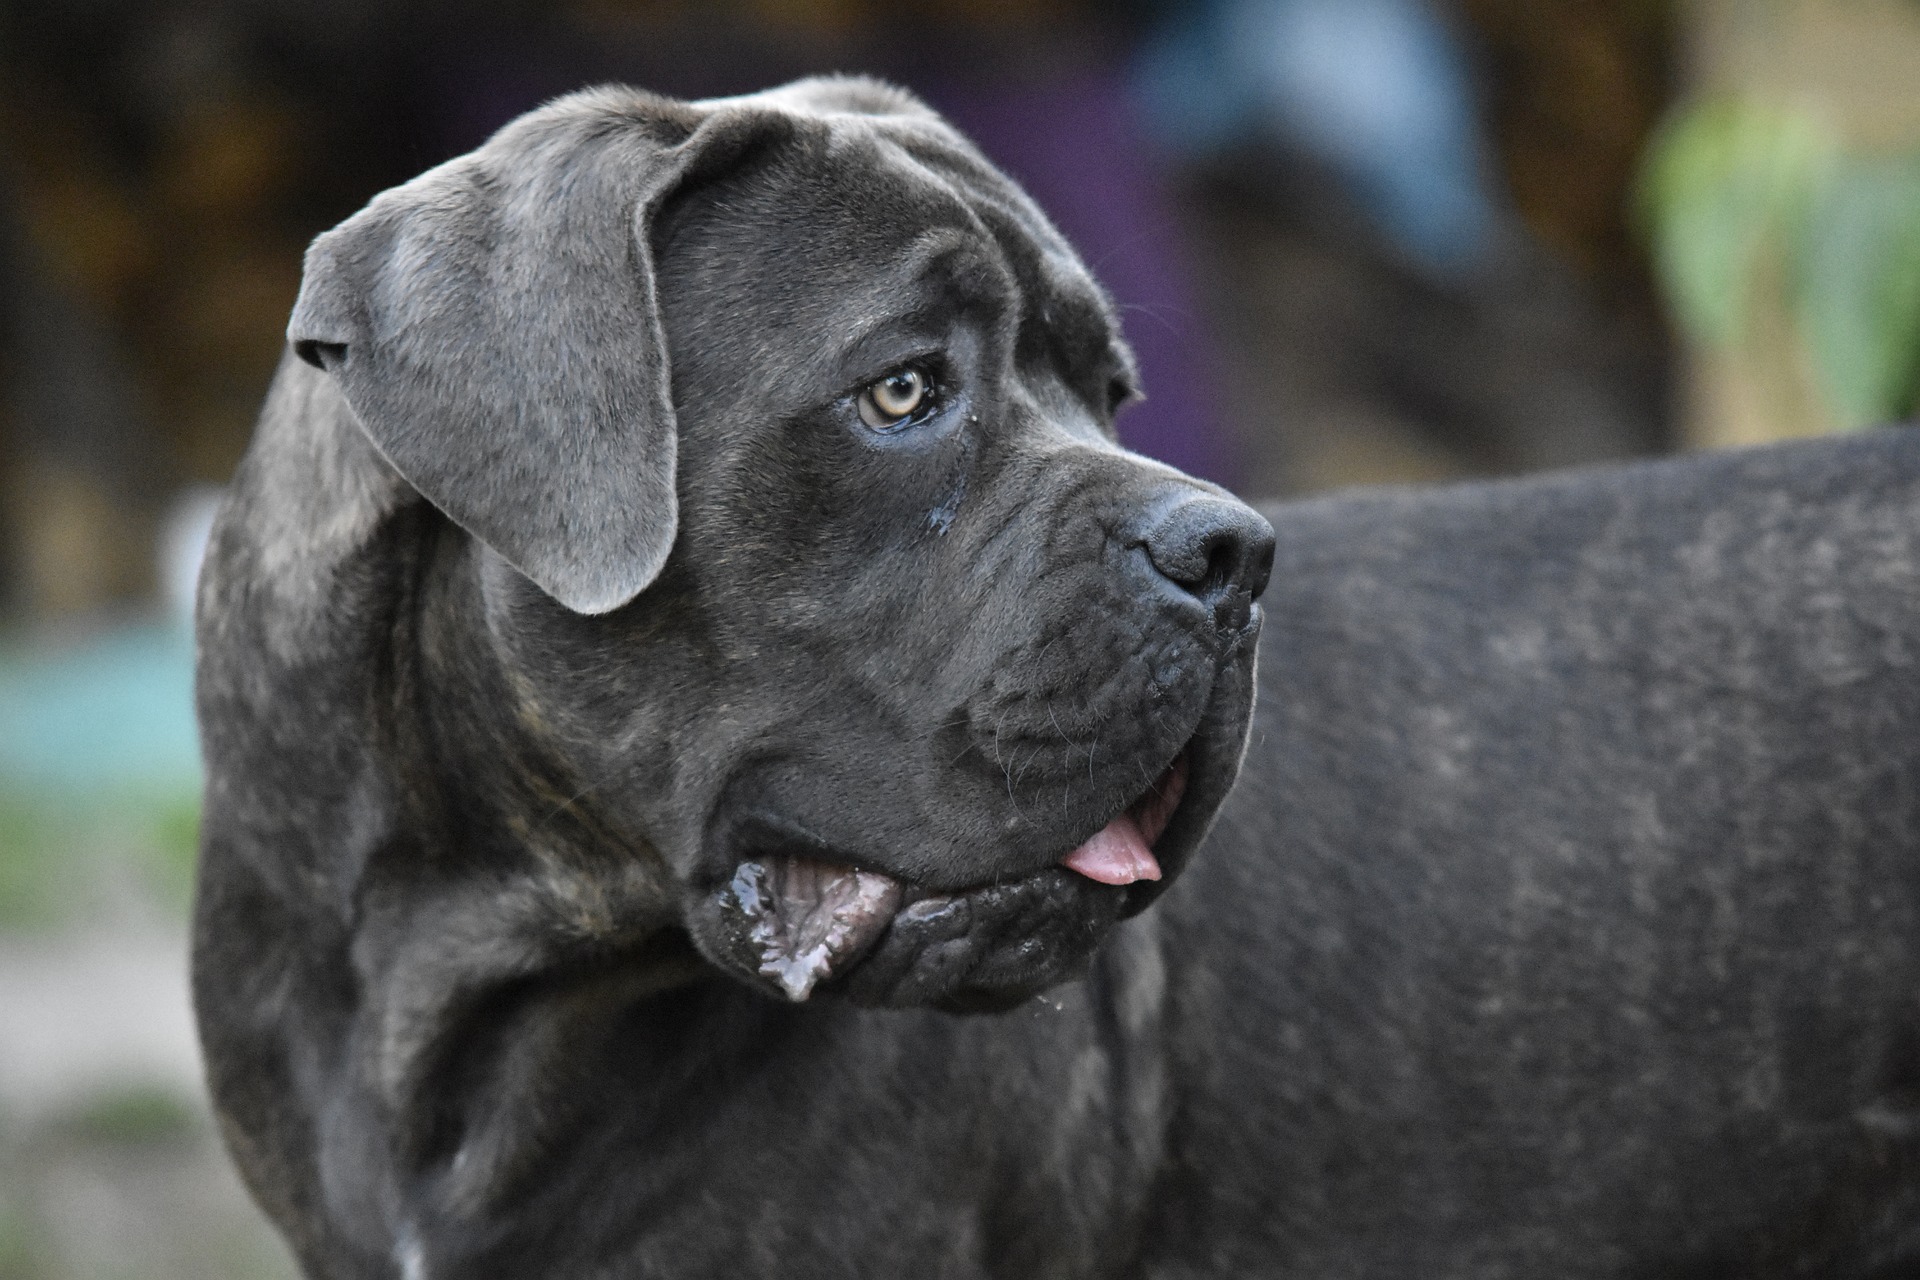 Cane Corso-Hunde benötigen aufgrund ihrer Herkunft und Intelligenz eine große Dosis an körperlicher und geistiger Aktivität.